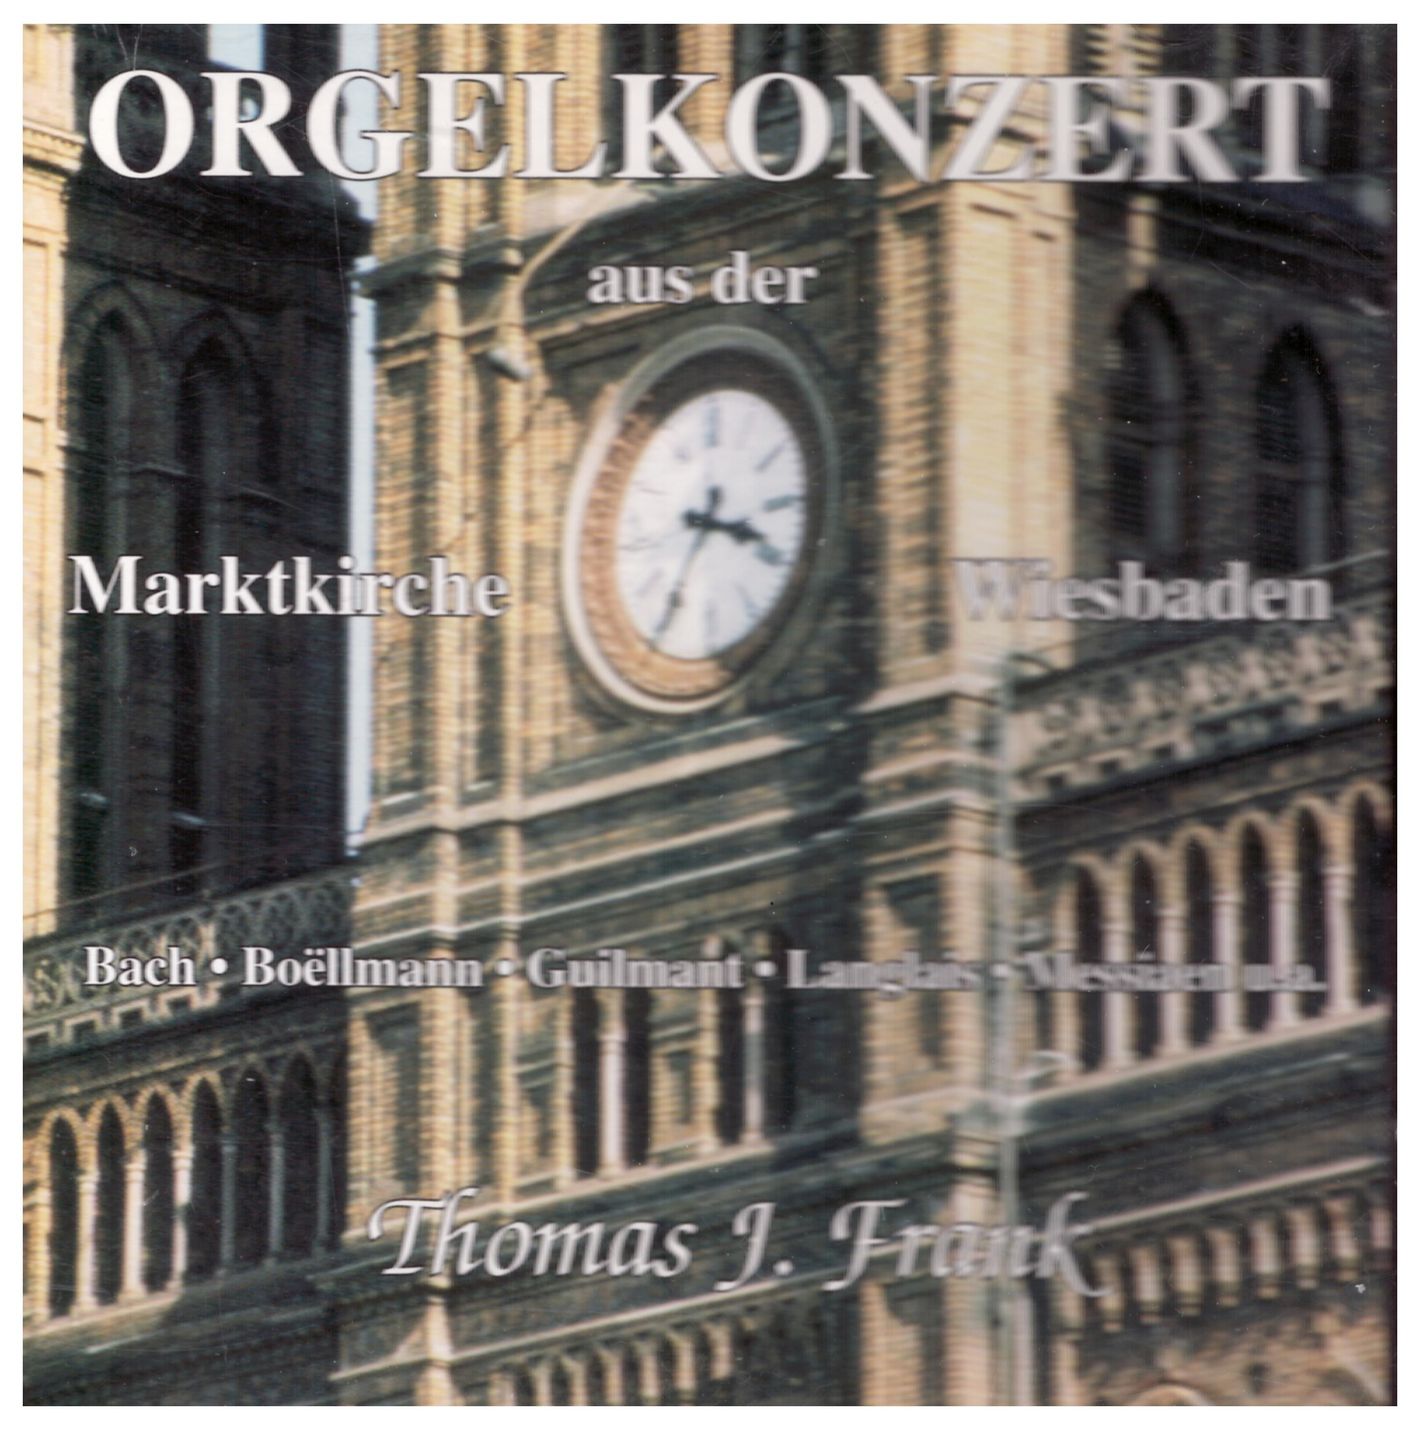 Orgelkonzert aus der Marktkirche Wiesbaden